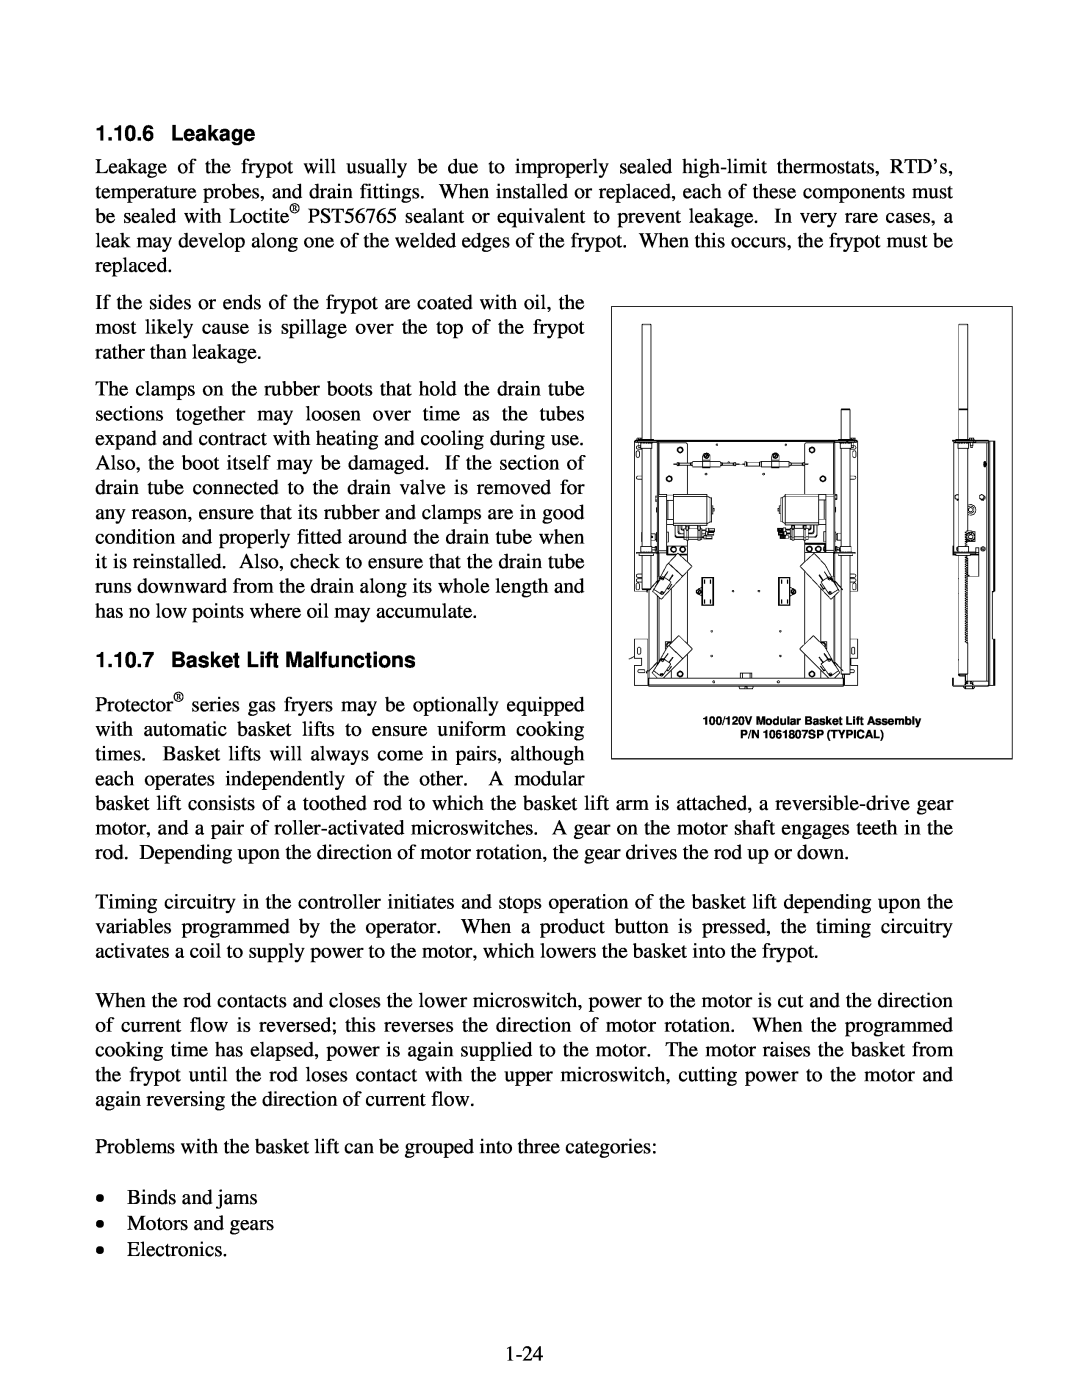 Frymaster 8196345 manual Leakage, Basket Lift Malfunctions 